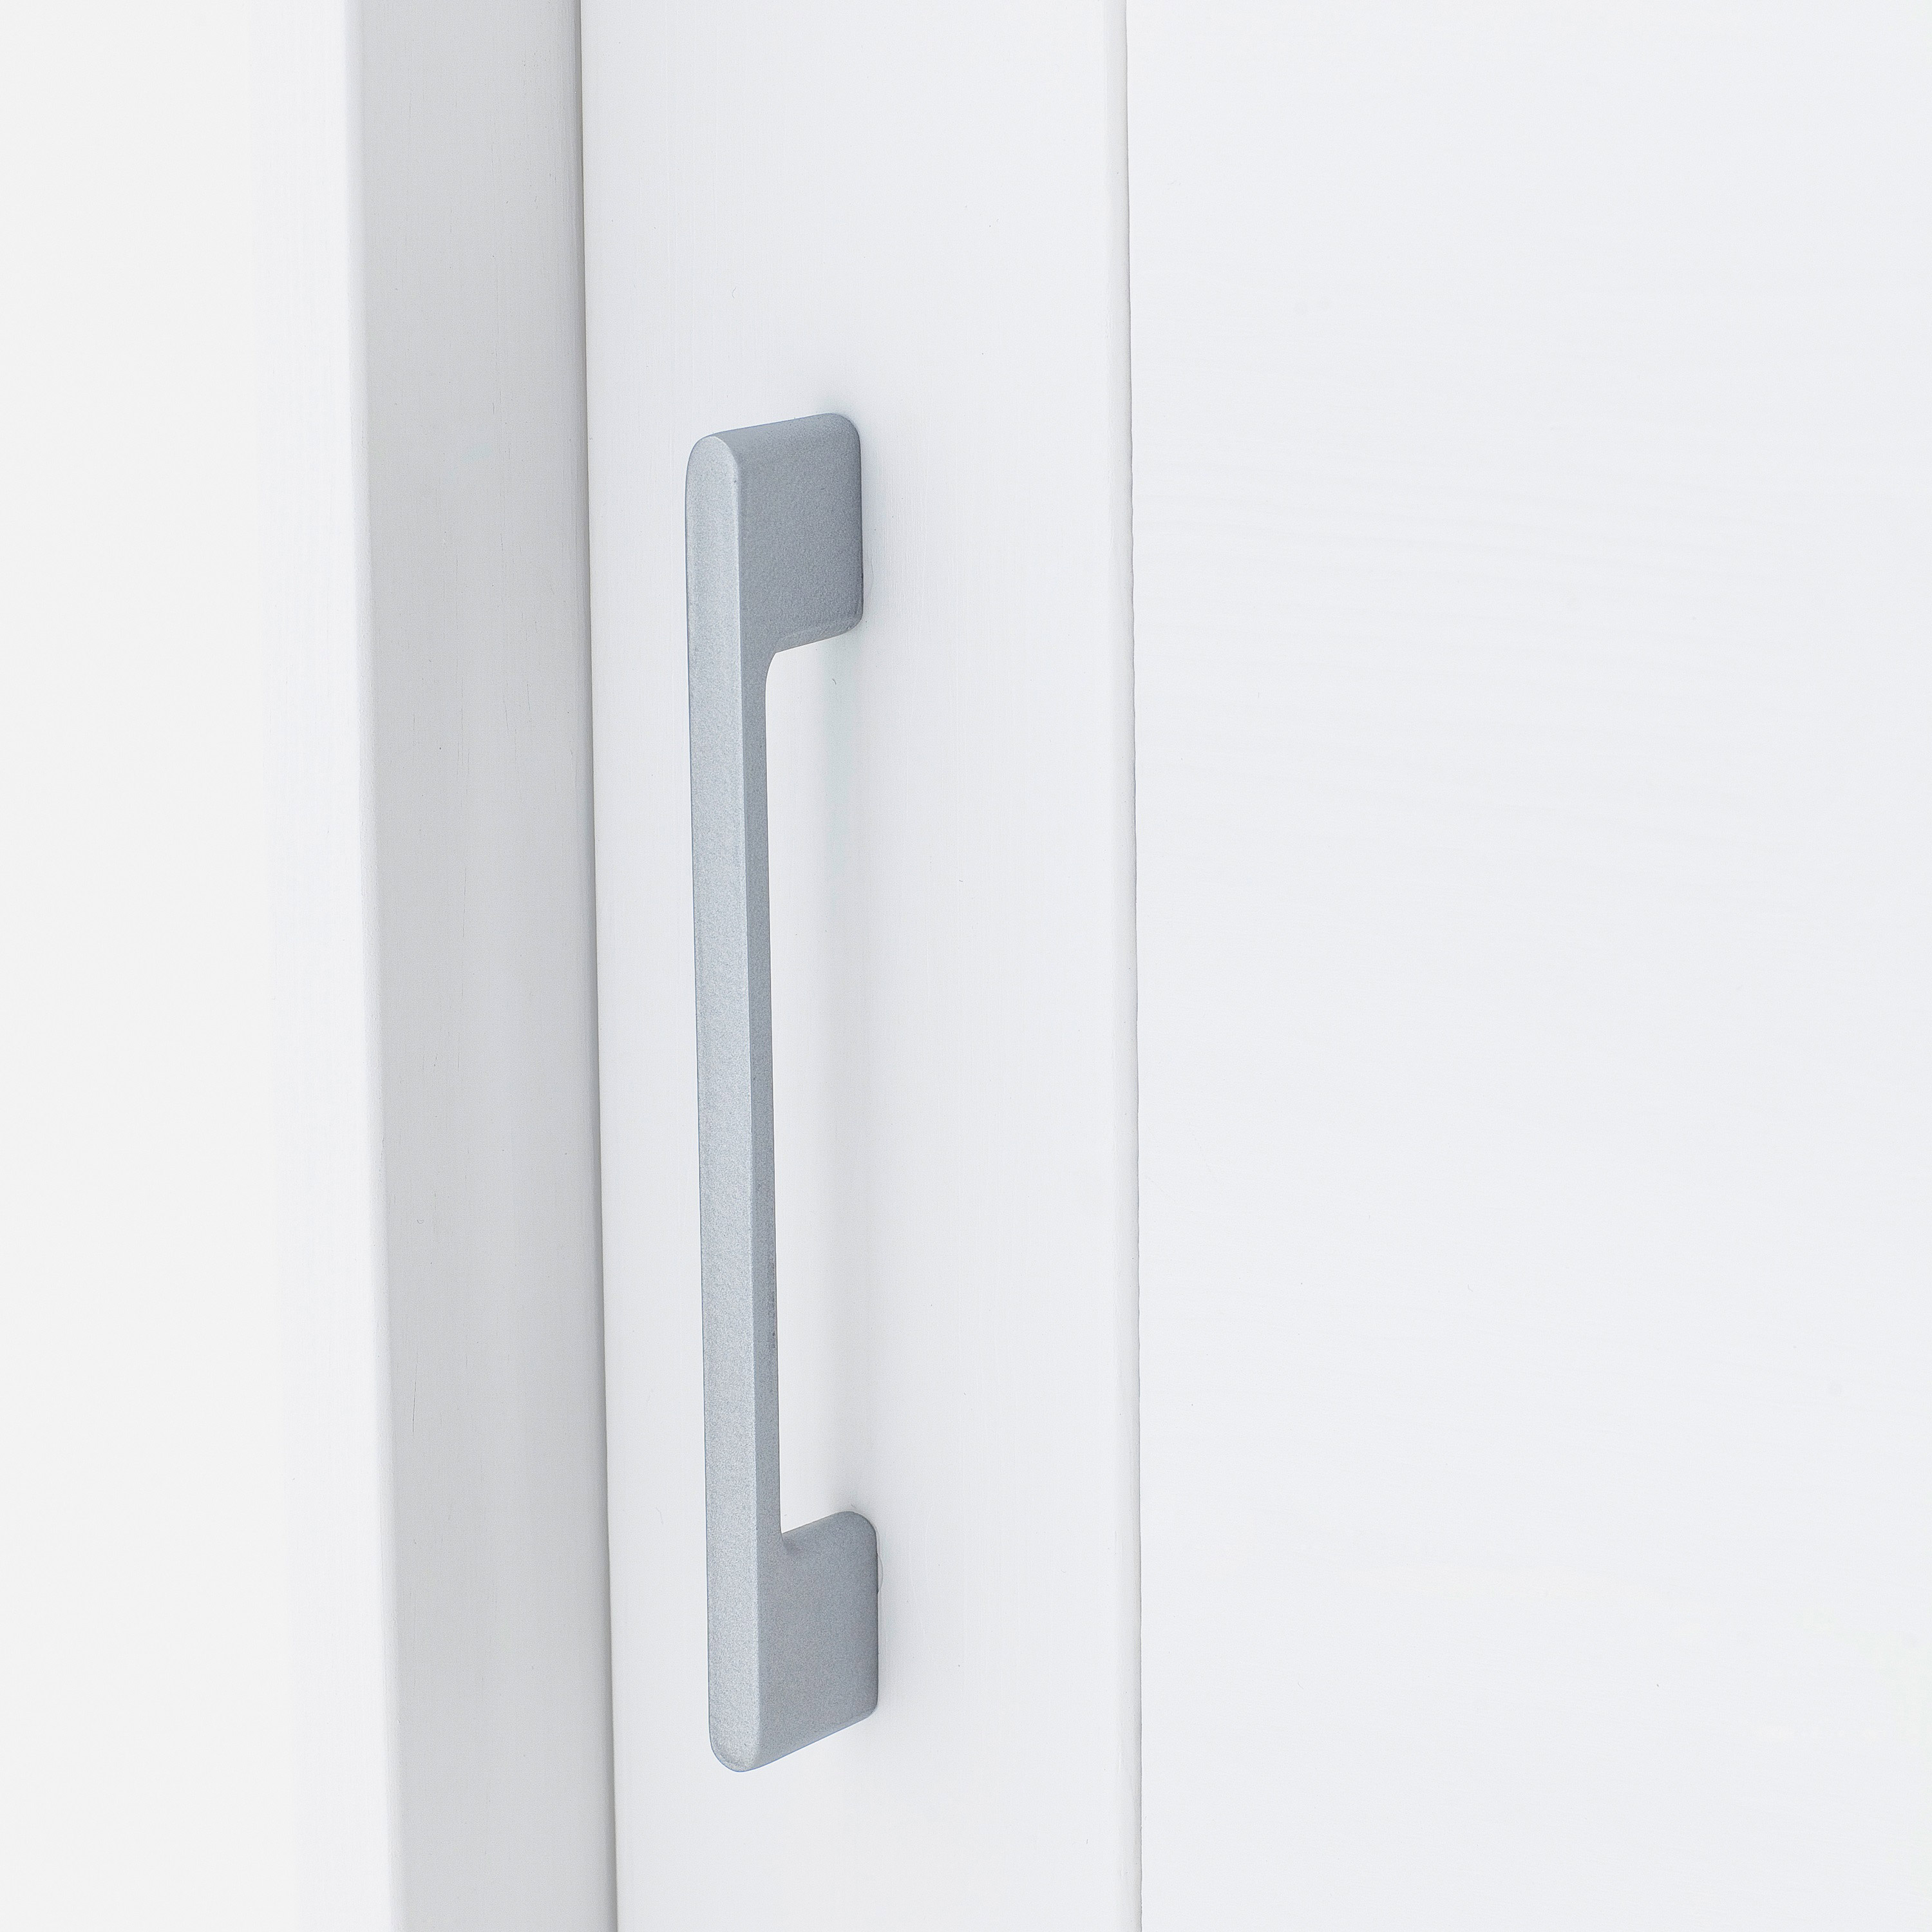 Schiebetürenschrank Skadi – aus massivem Fichtenholz, mit zwei Türen und vier Schubladen, weiß lackiert